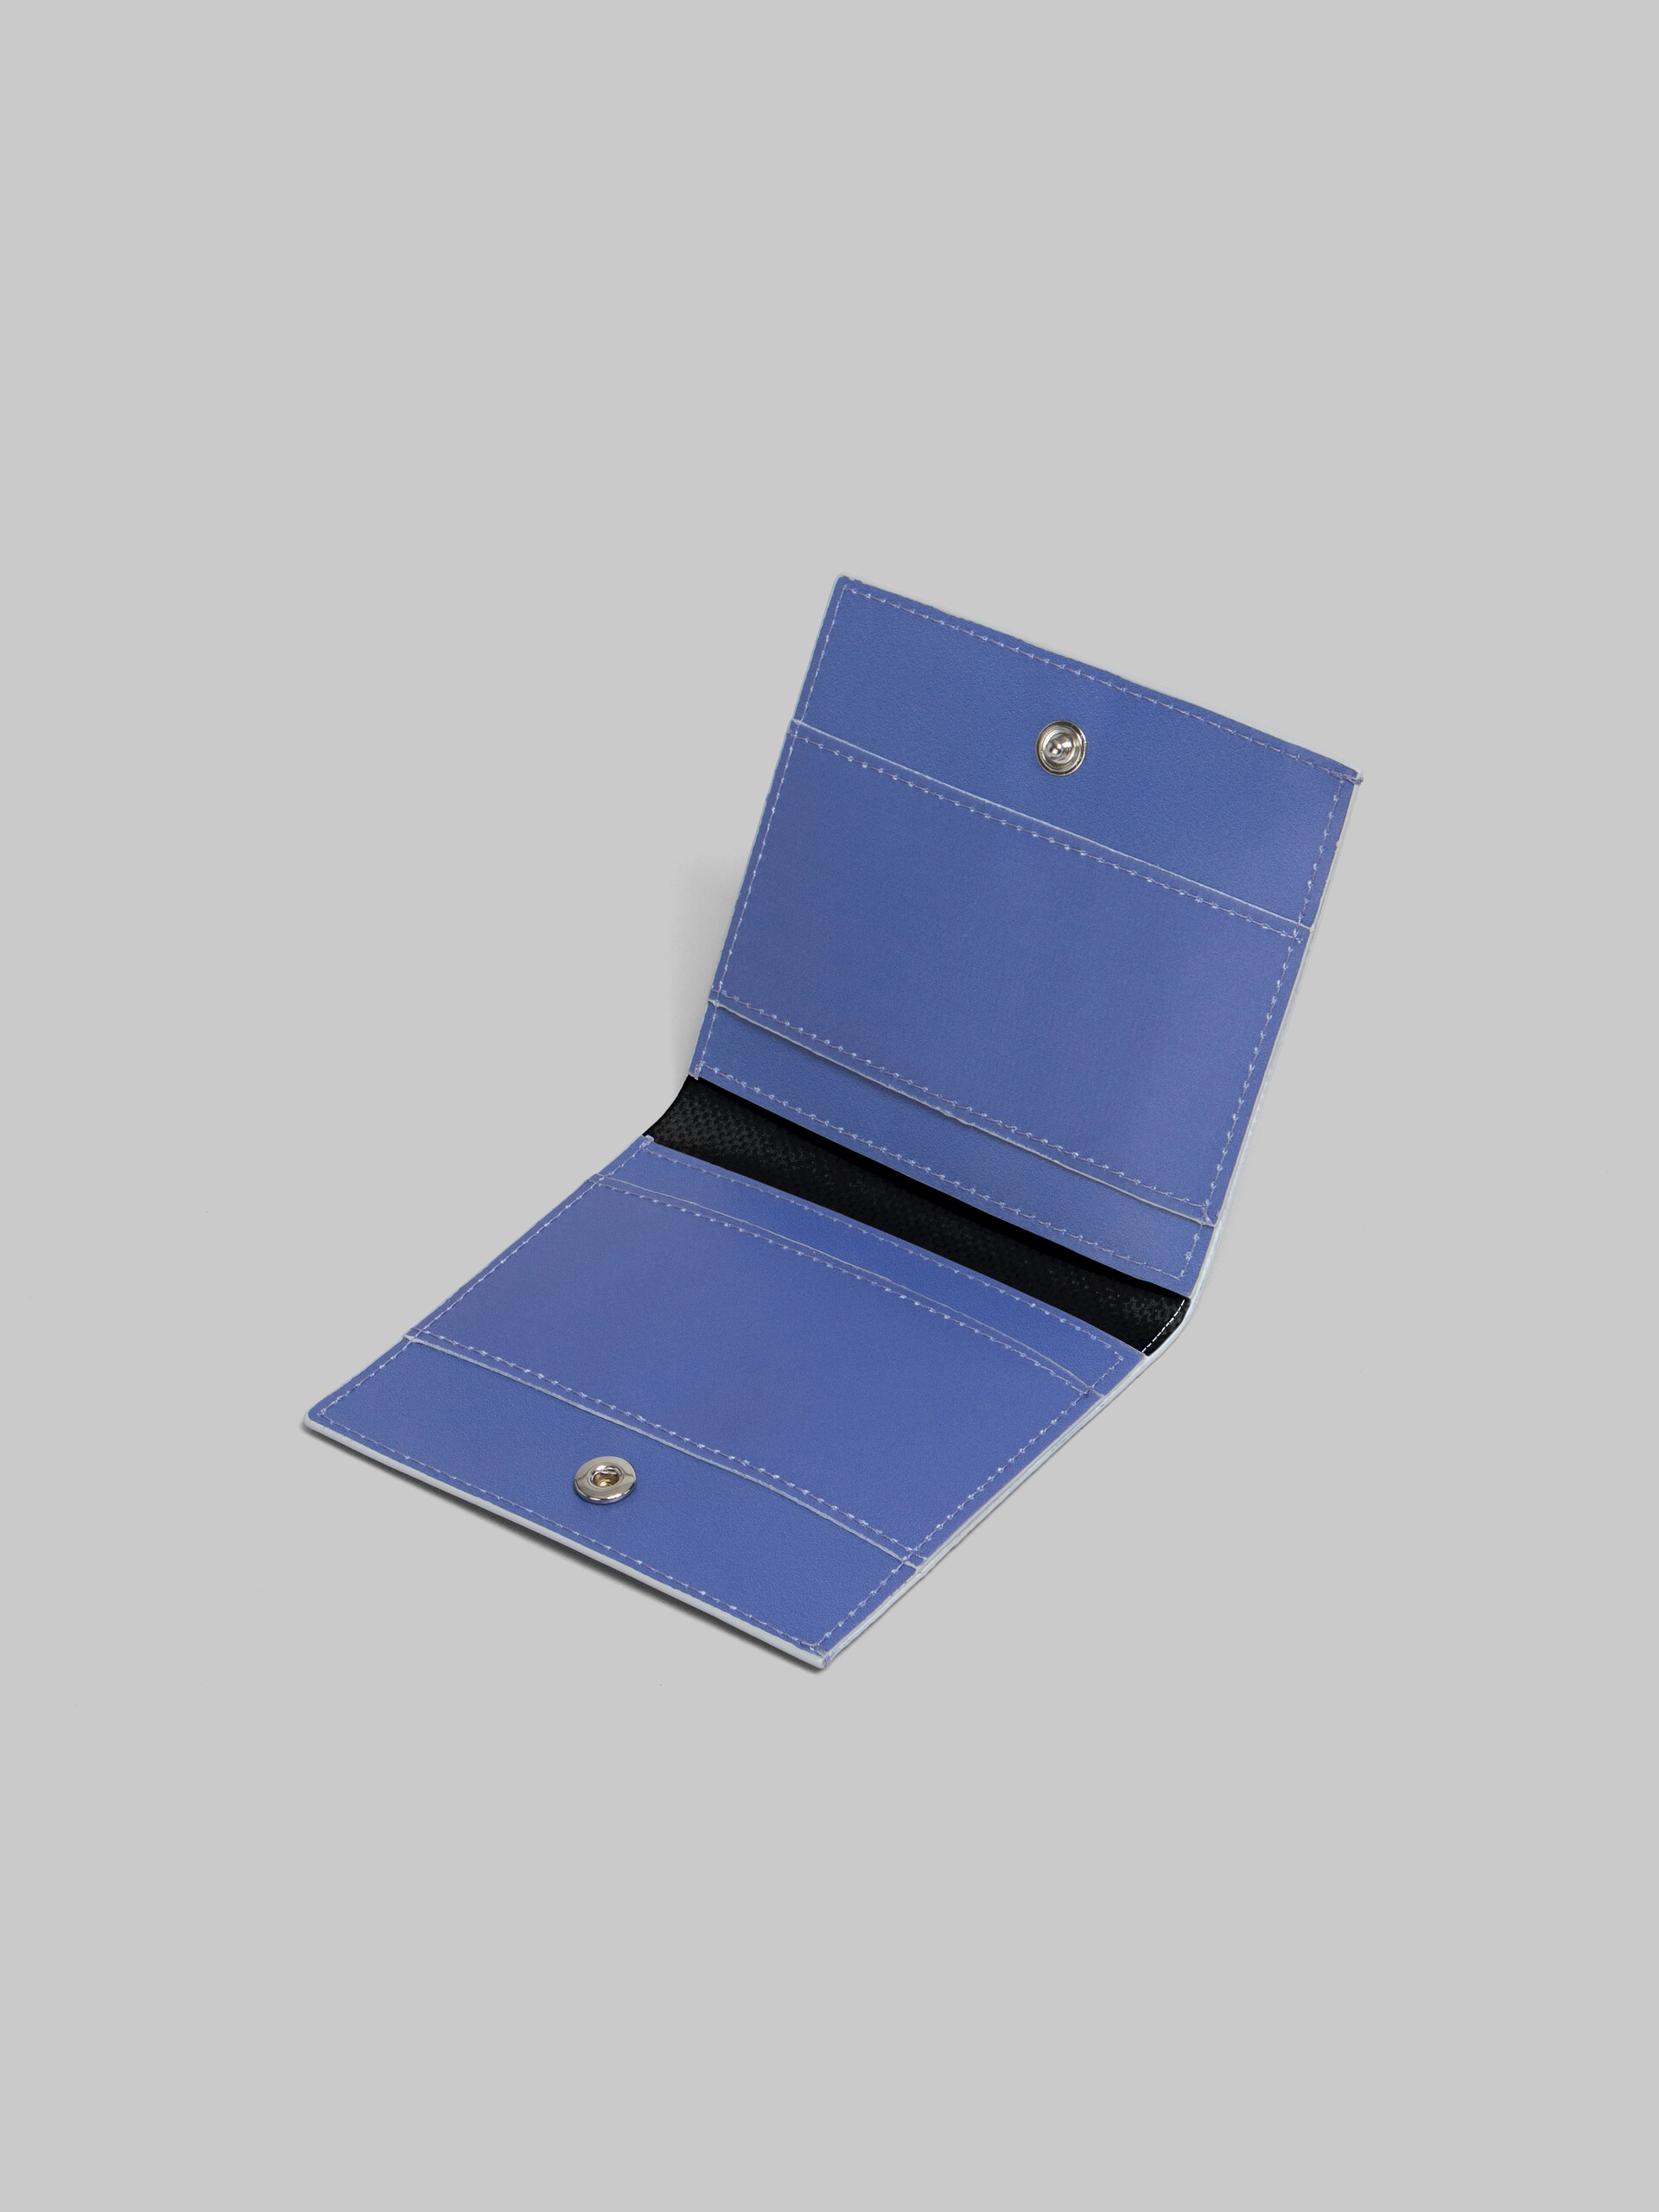 Portafoglio bi-fold Tribeca viola e blu - Portafogli - Image 2